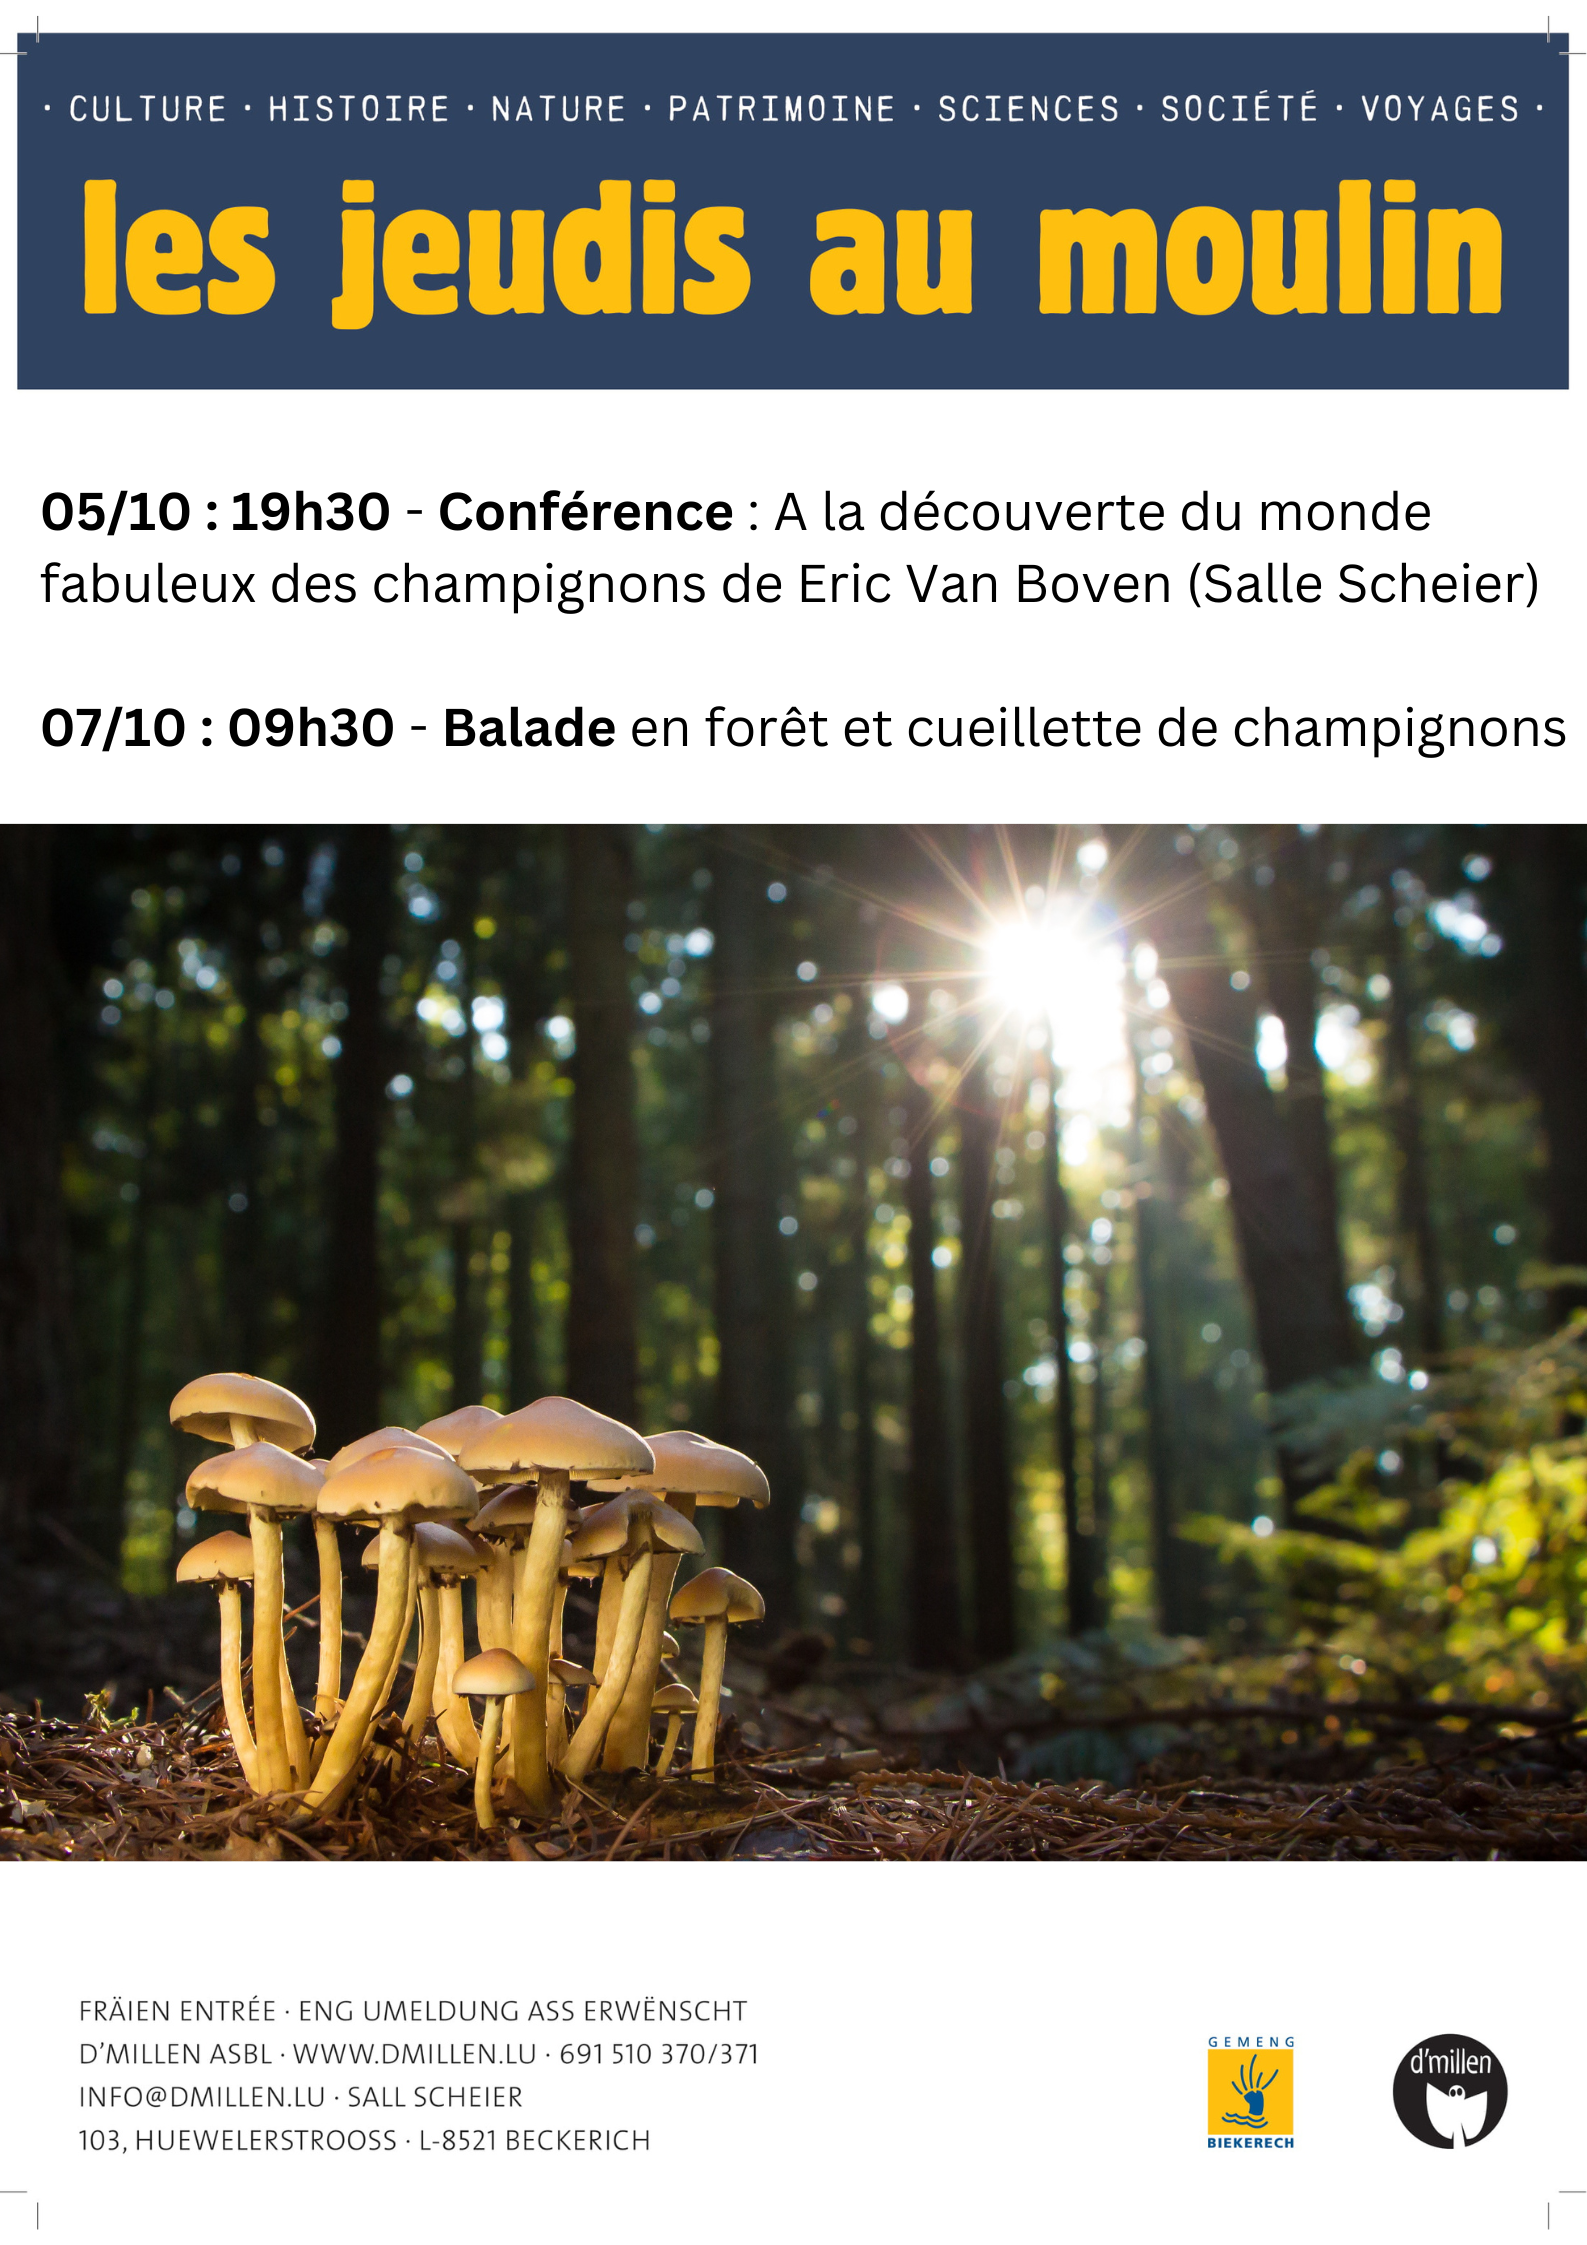 "A la découverte des champignons" - conférence